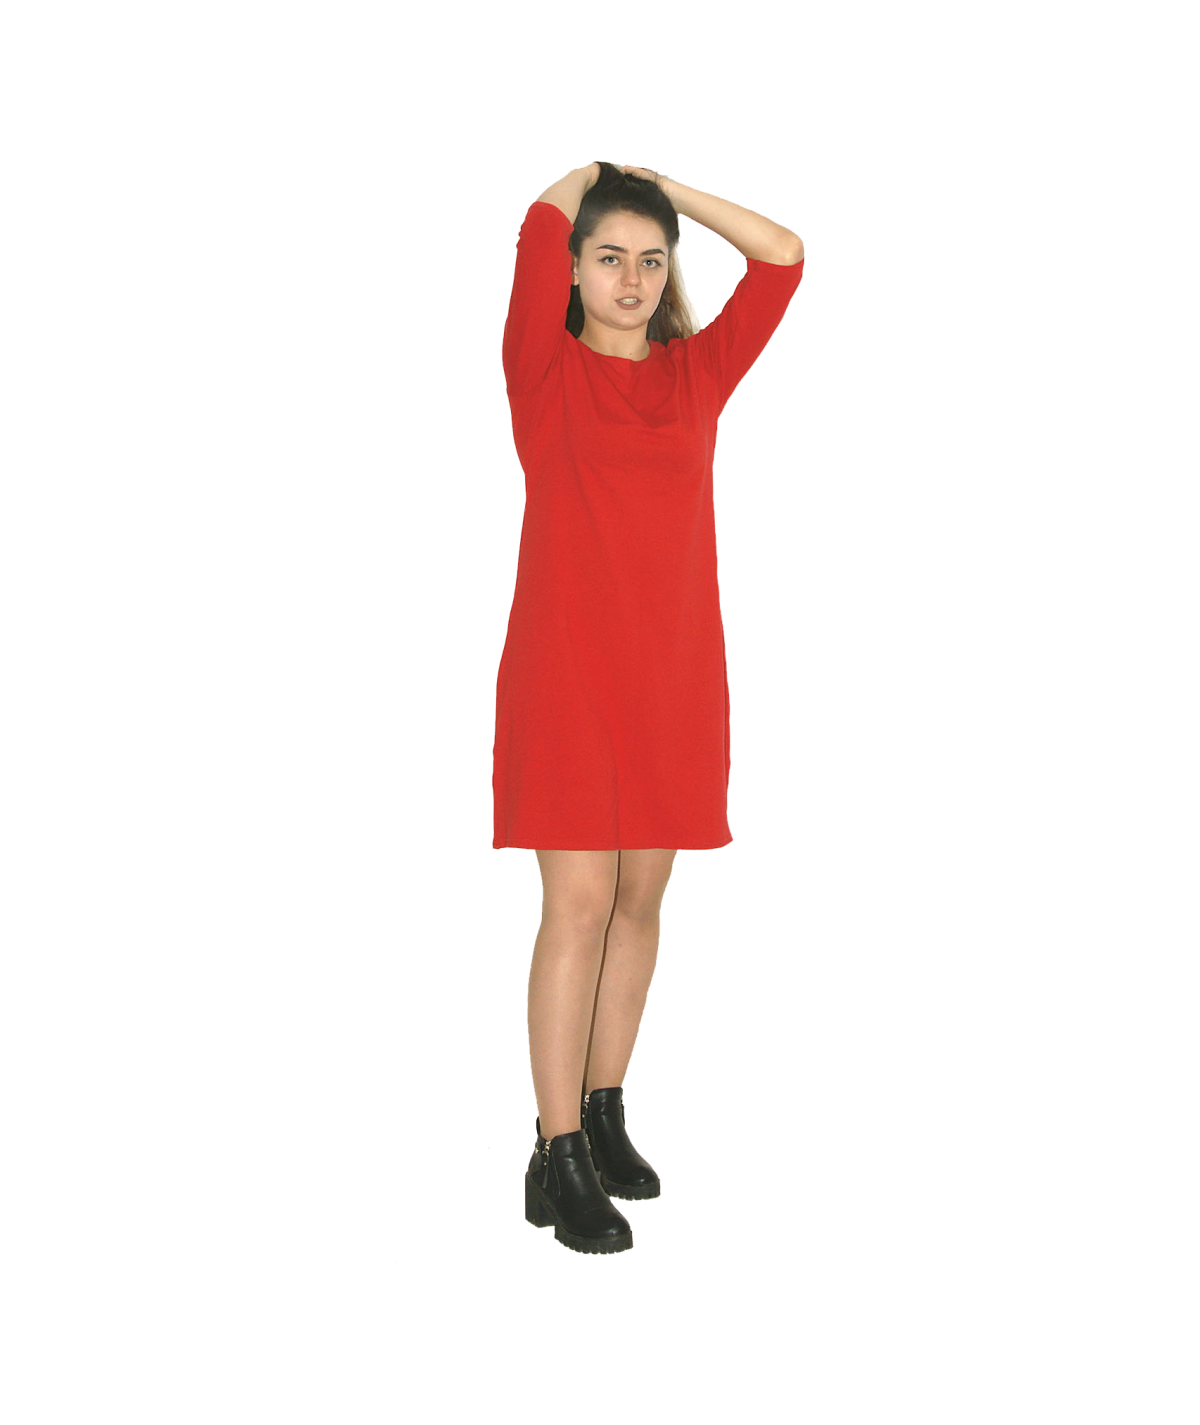 Платье спортивного стиля Размер 44/164 Цвет Красный Материал Трикотаж